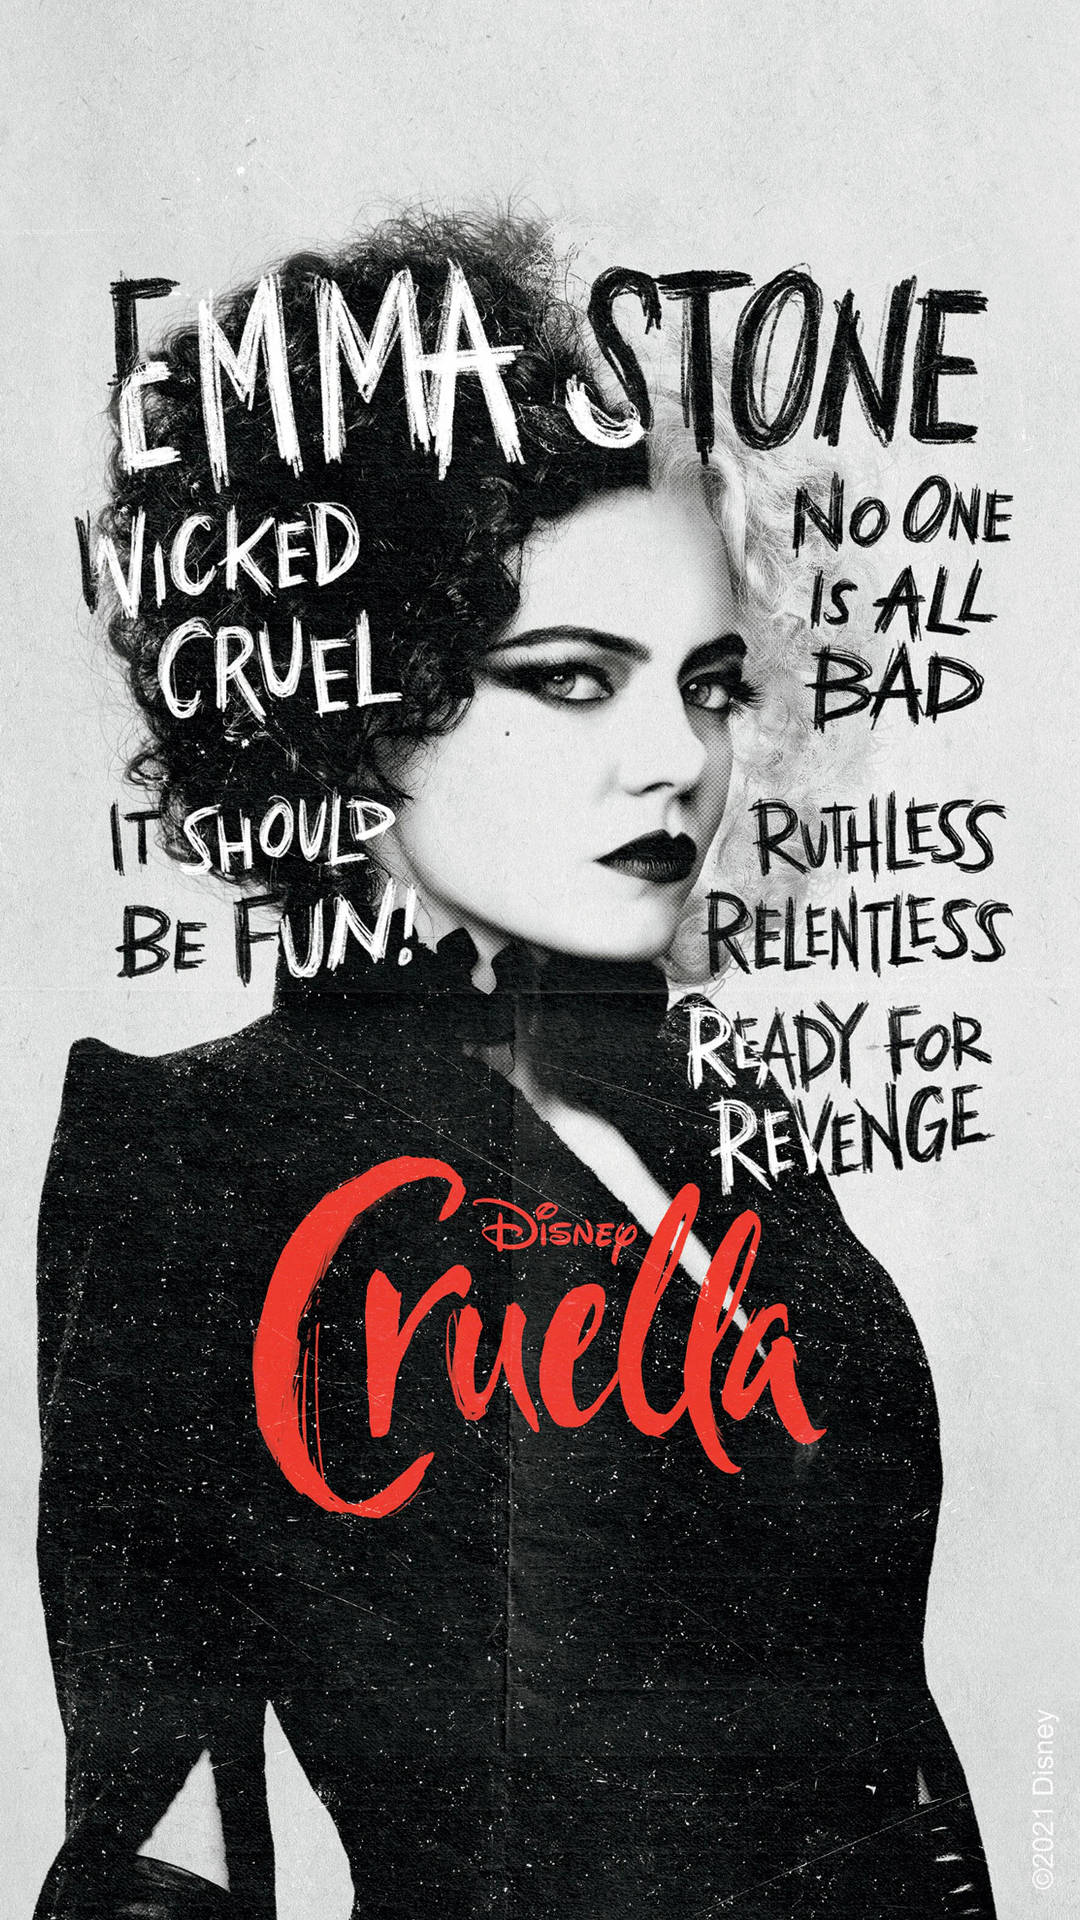 Cruella 2021 Wicked Cruel Poster Wallpaper